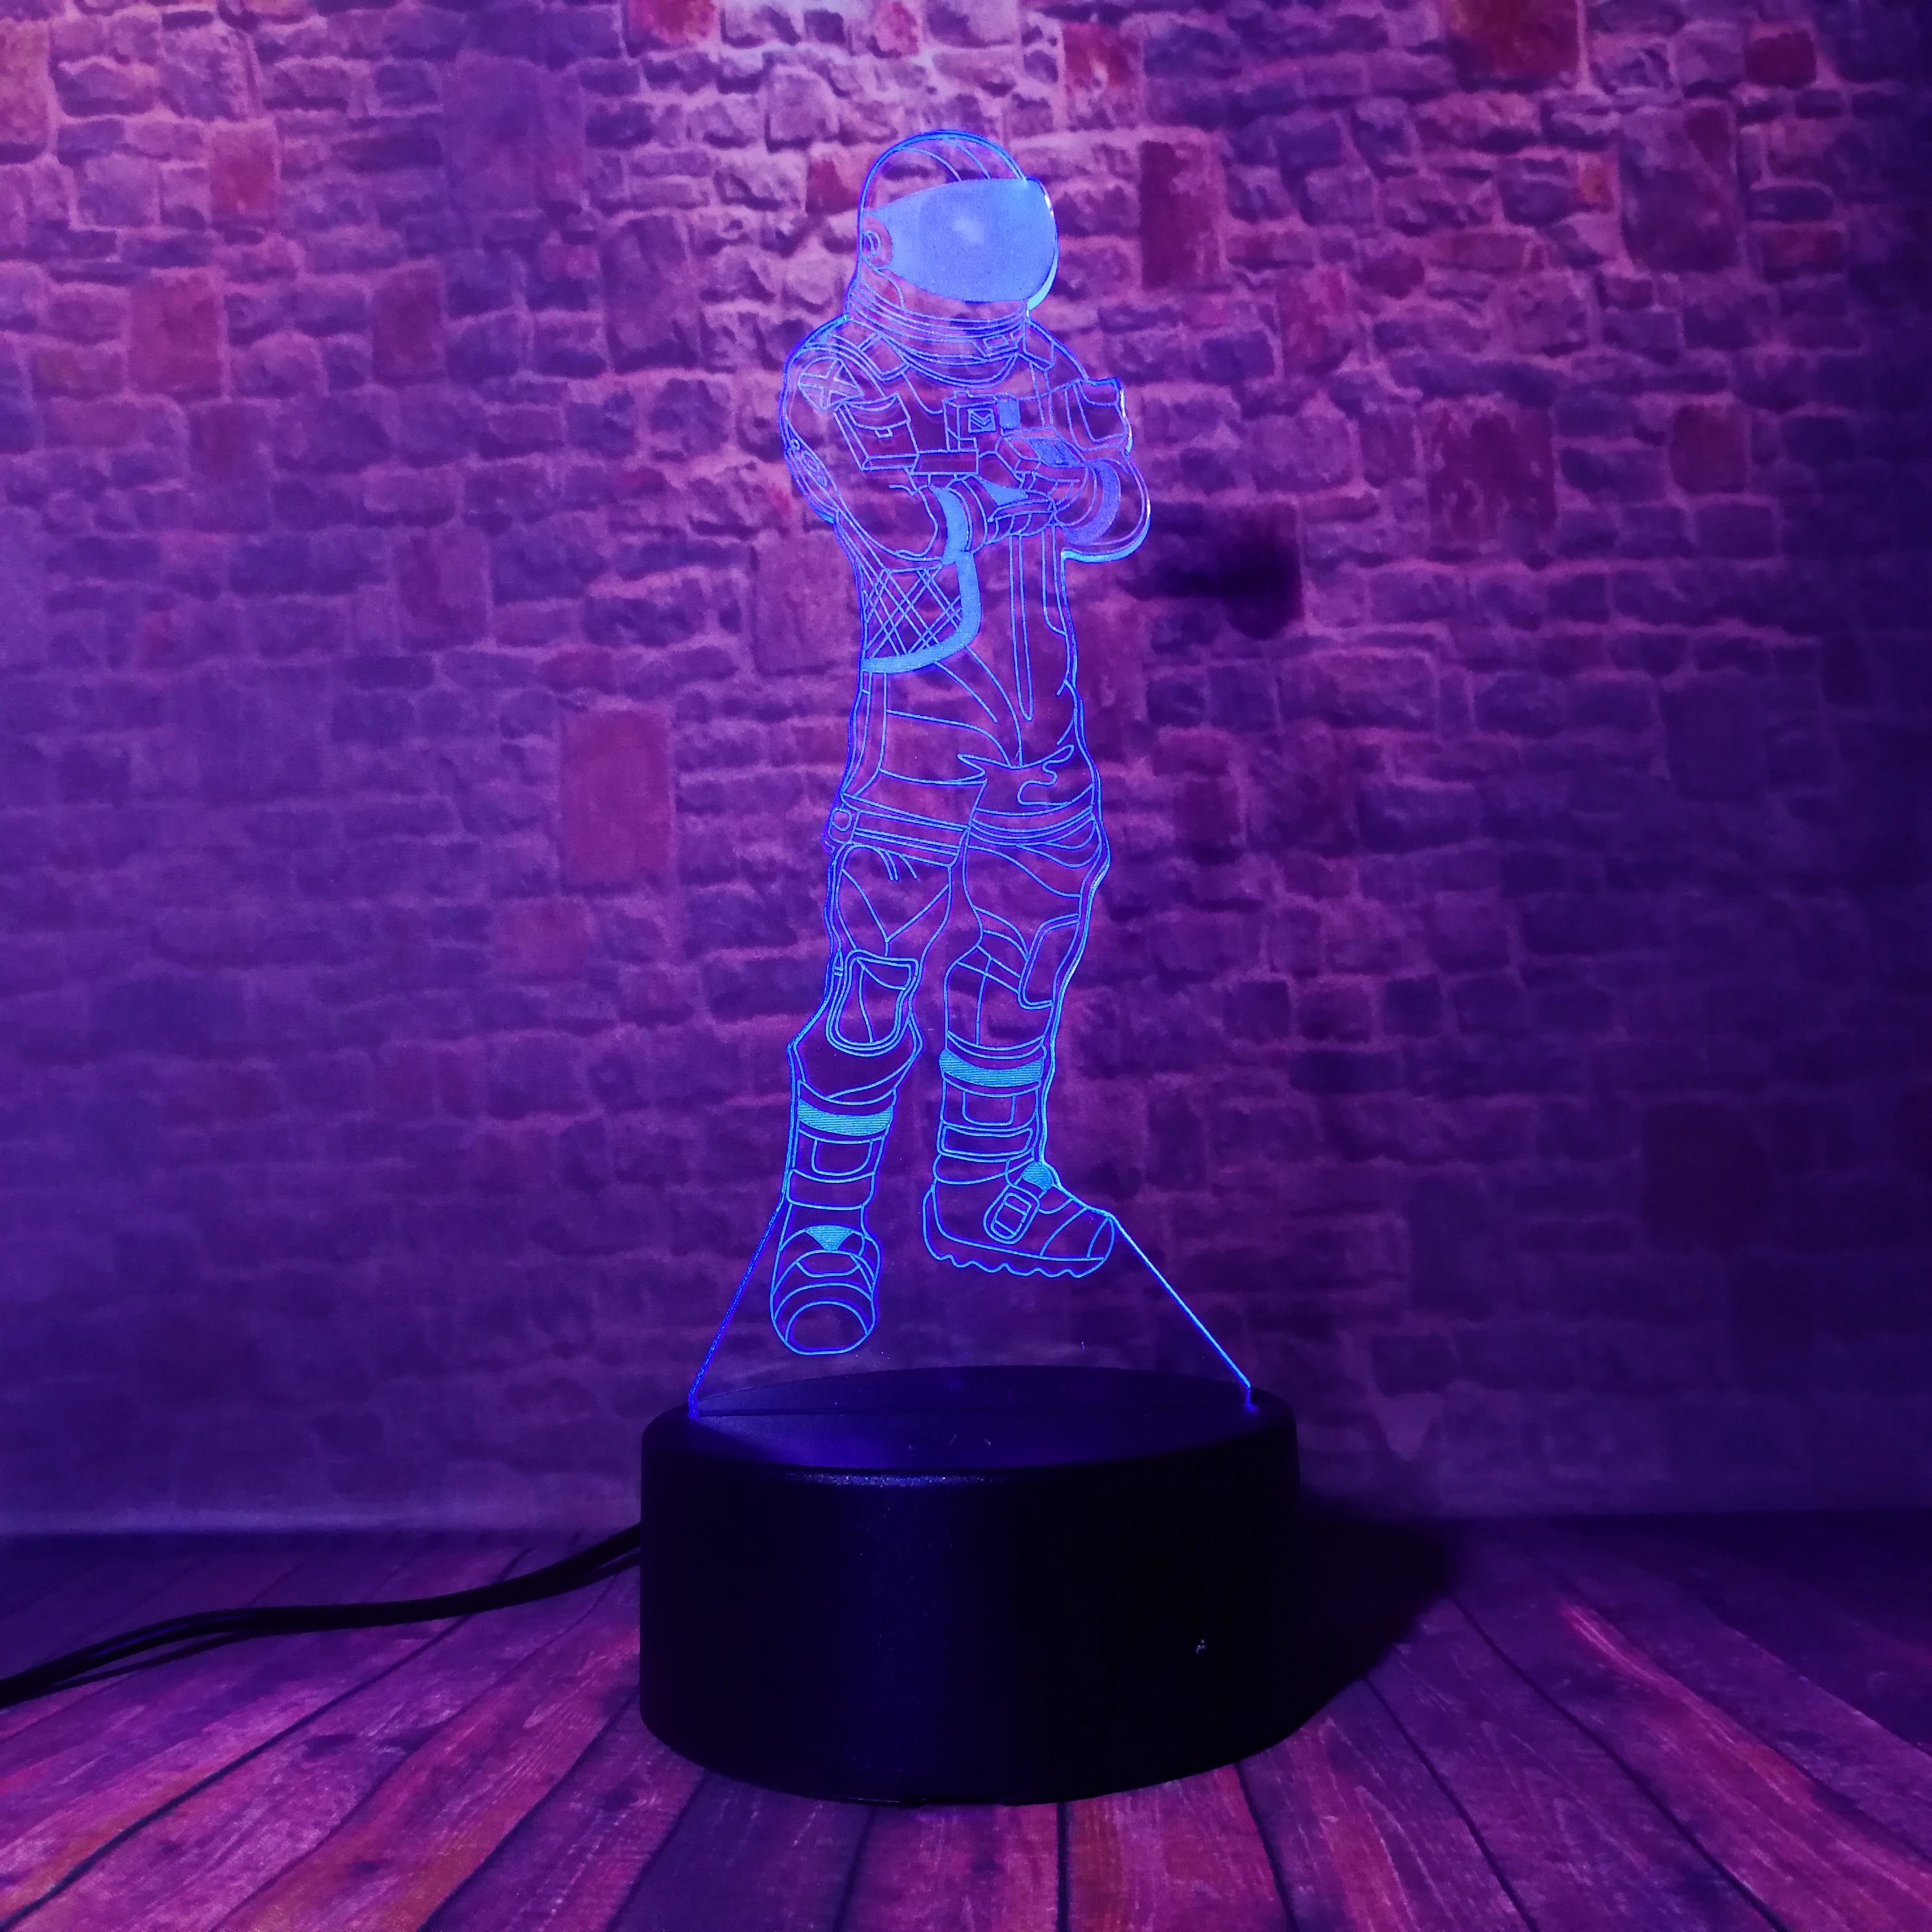 Горячая игра Темный Voyager TPS Прохладный битва Royale человек мальчик ночной Светильник 3D RGB 7 Красочный Светодиодный светильник для настроения на день рождения праздник Рождество подарки